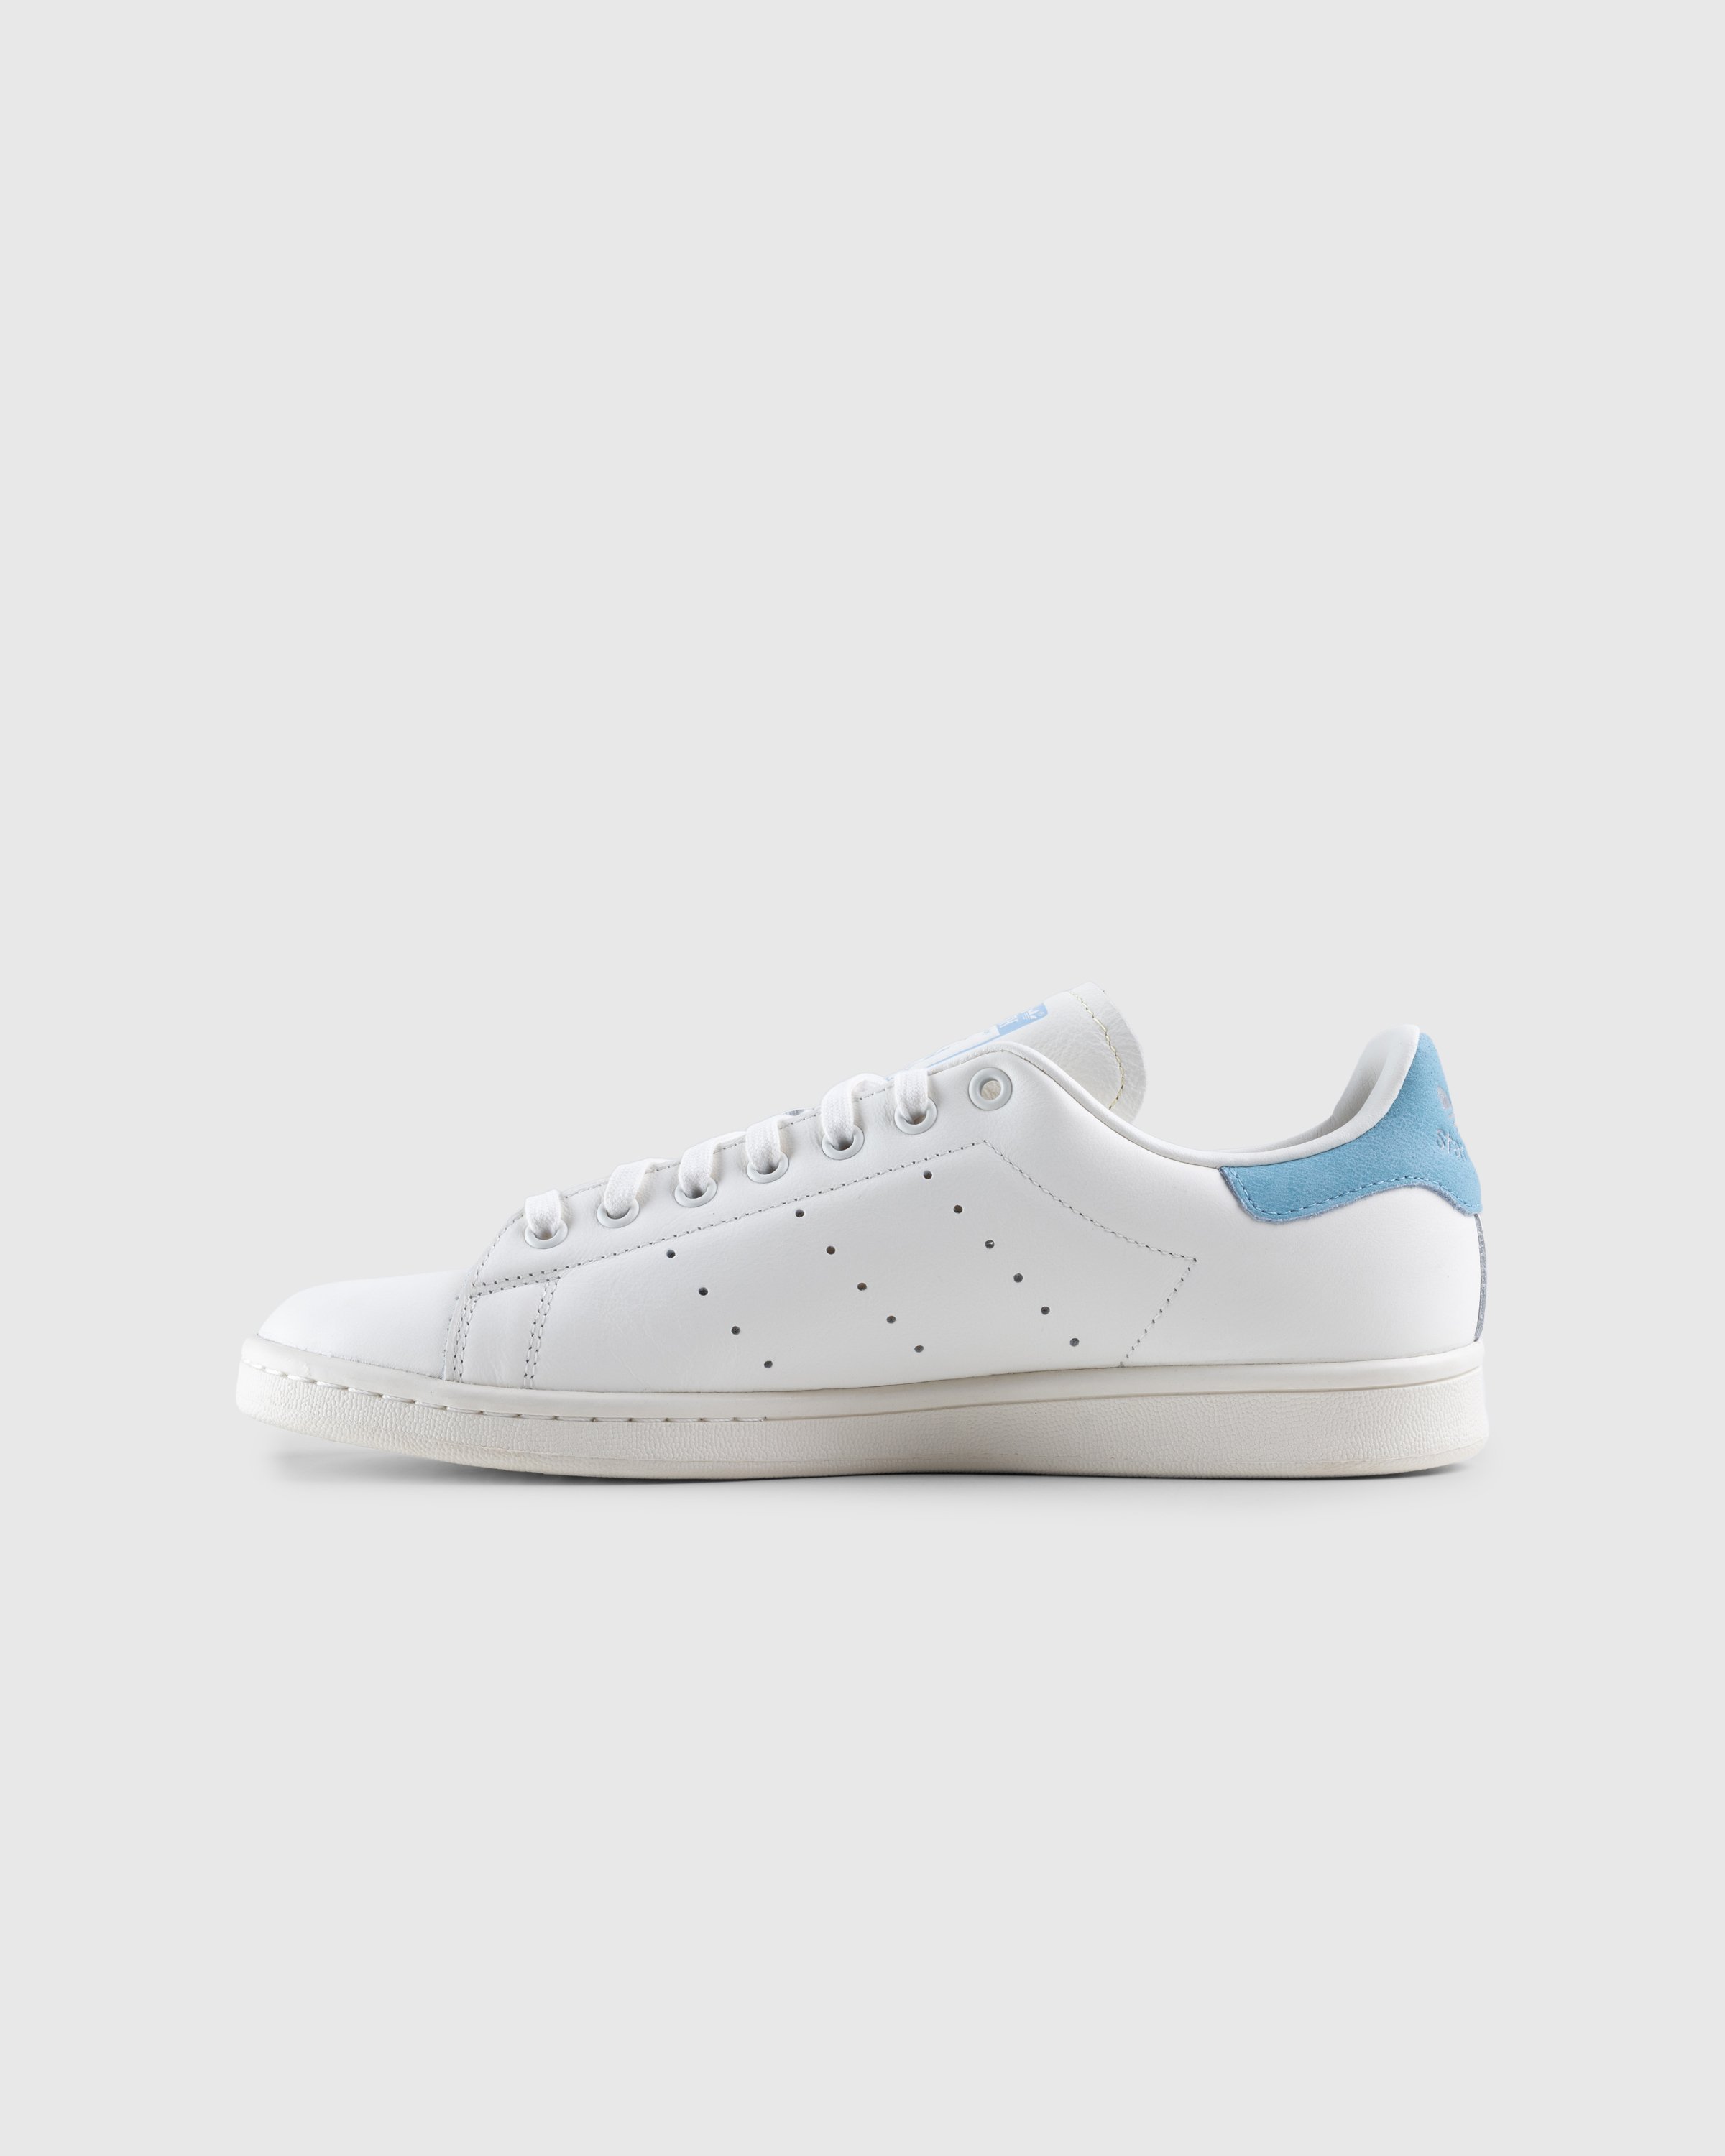 Adidas - Stan Smith White Blue - Footwear - White - Image 2